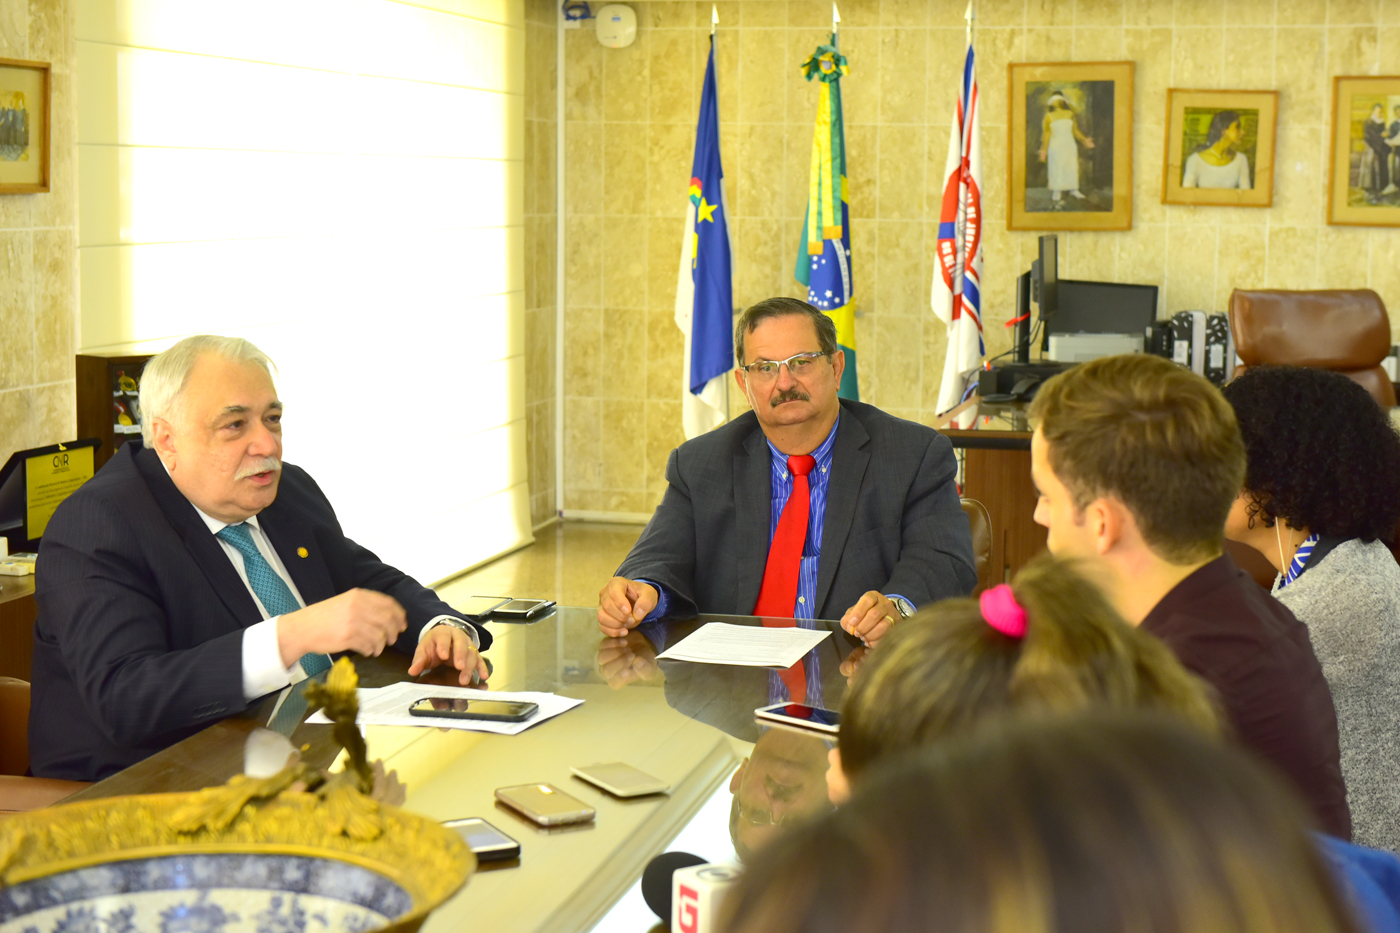 Desembargadores Fernando Cerqueira e Jones Fogueiredo sentados em mesa de reunião, rodeados por jornalistas.